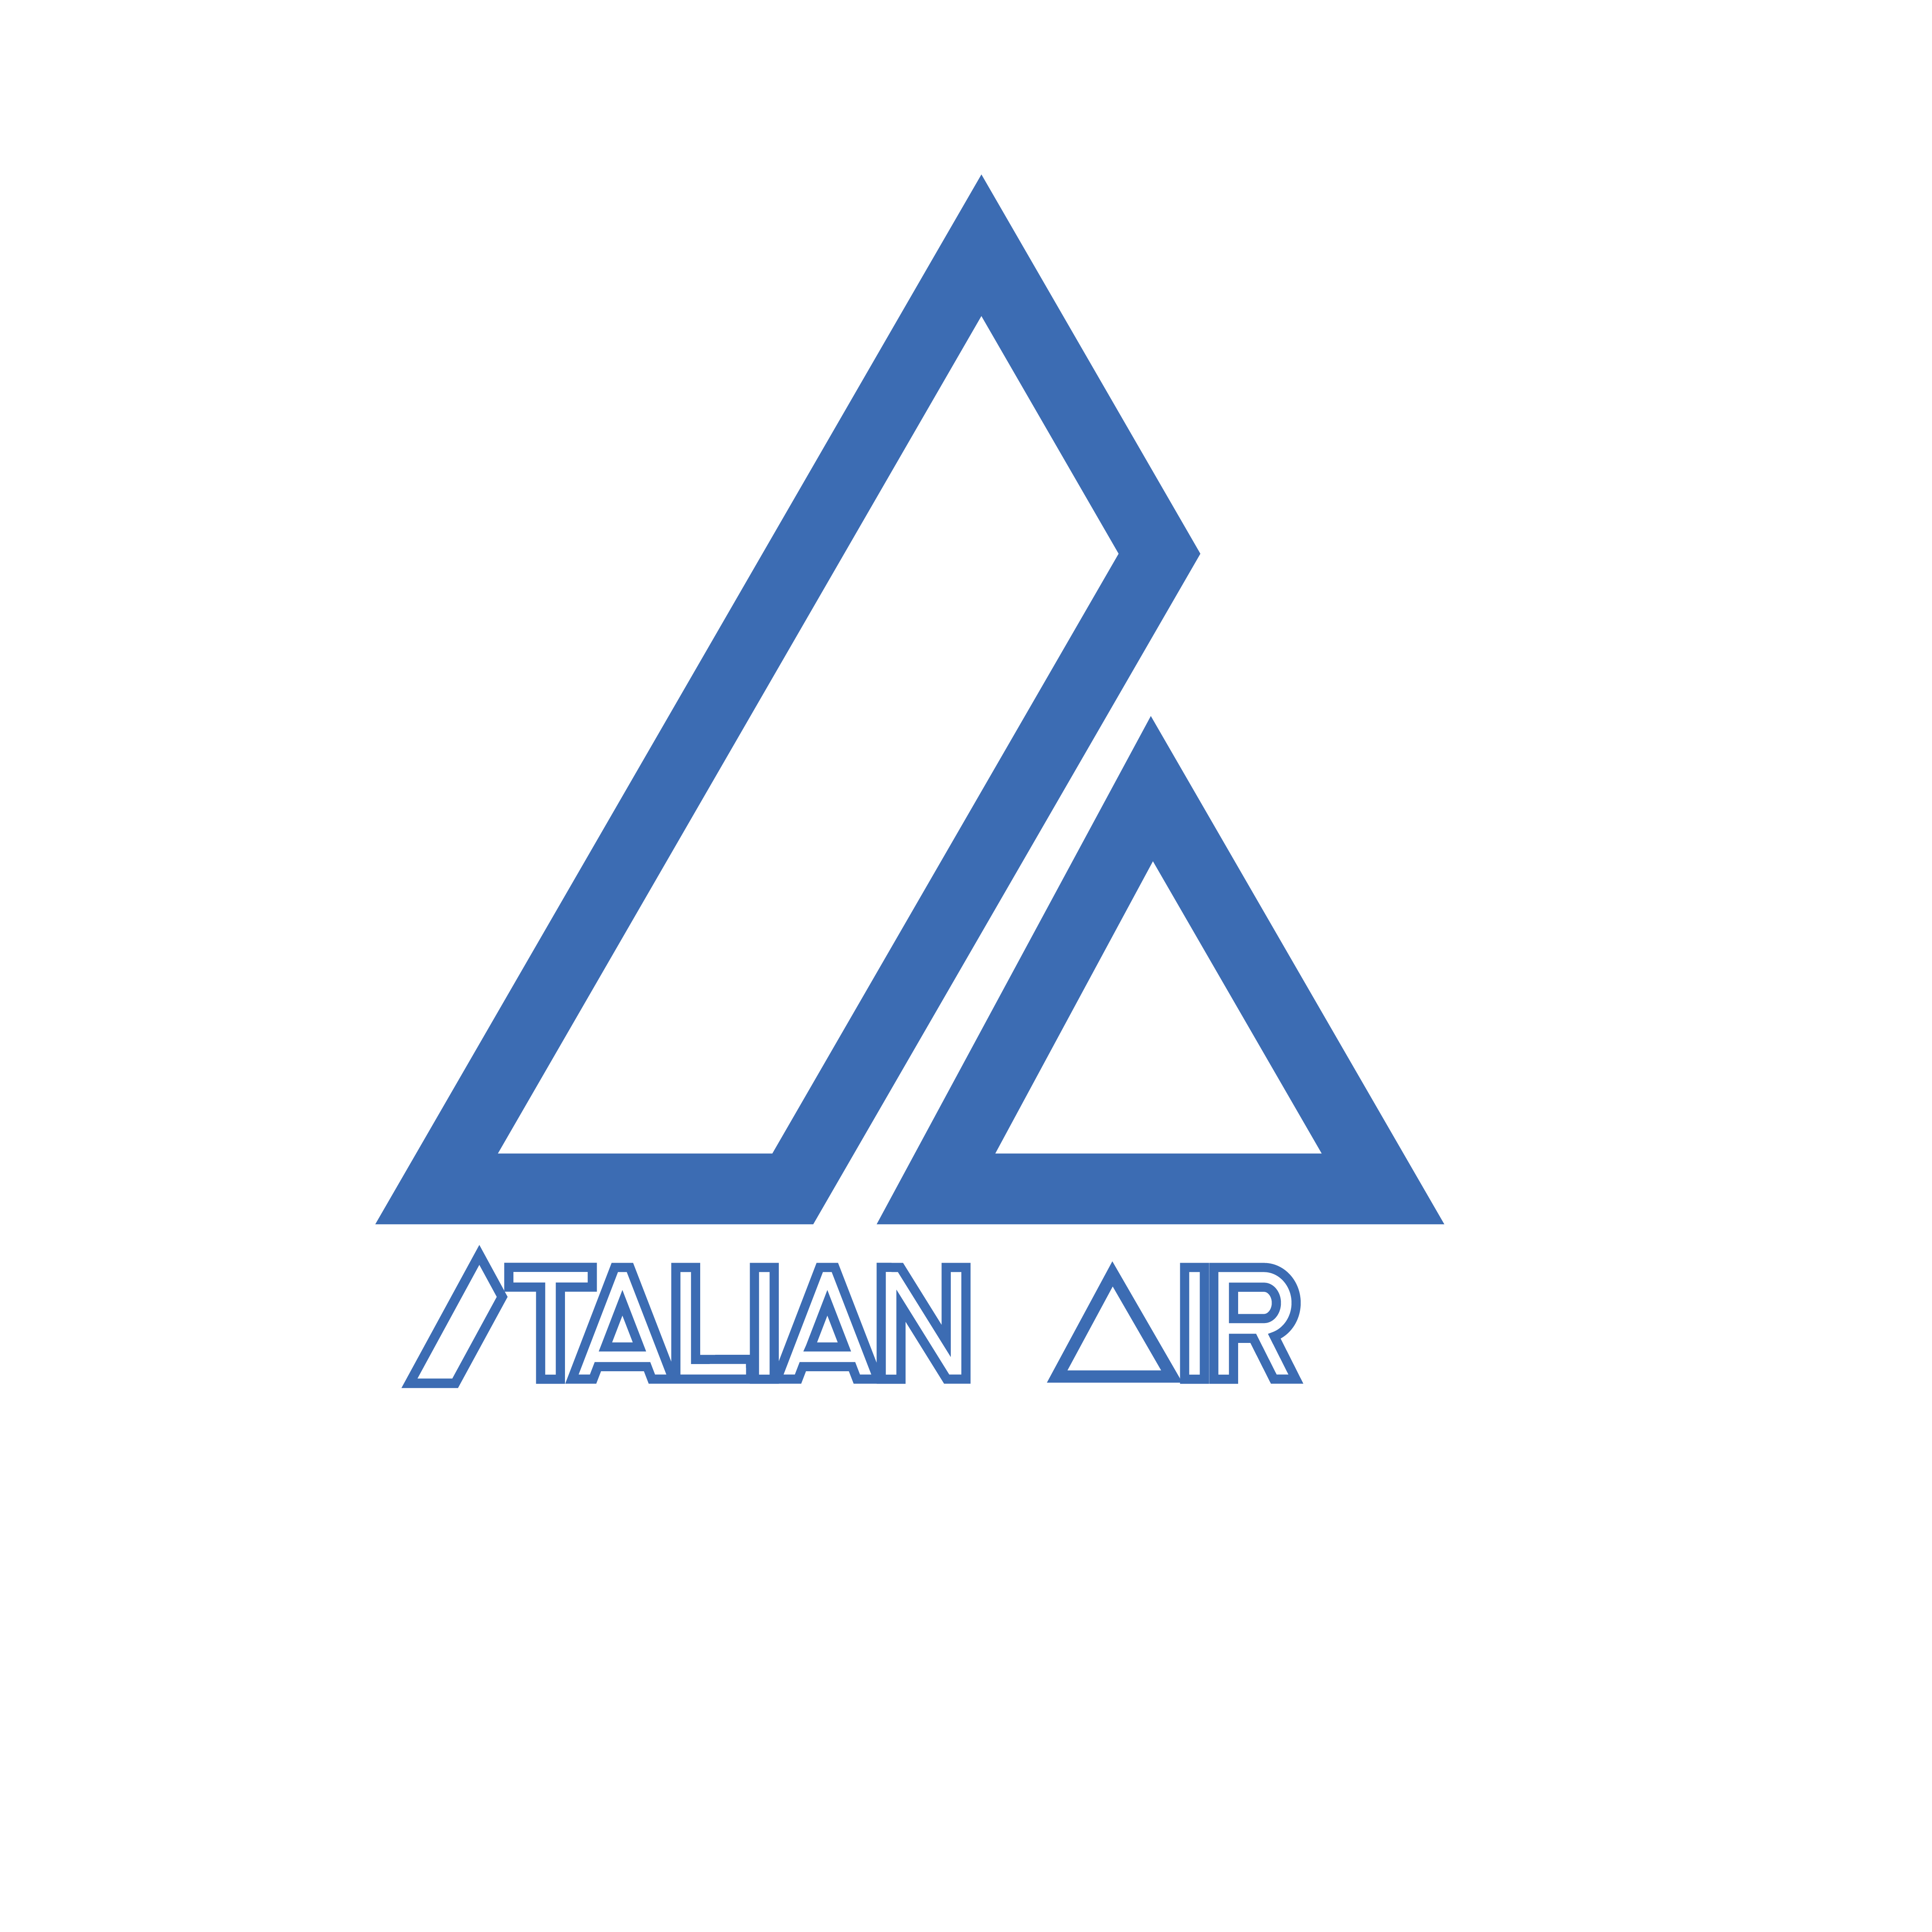 Italian Air